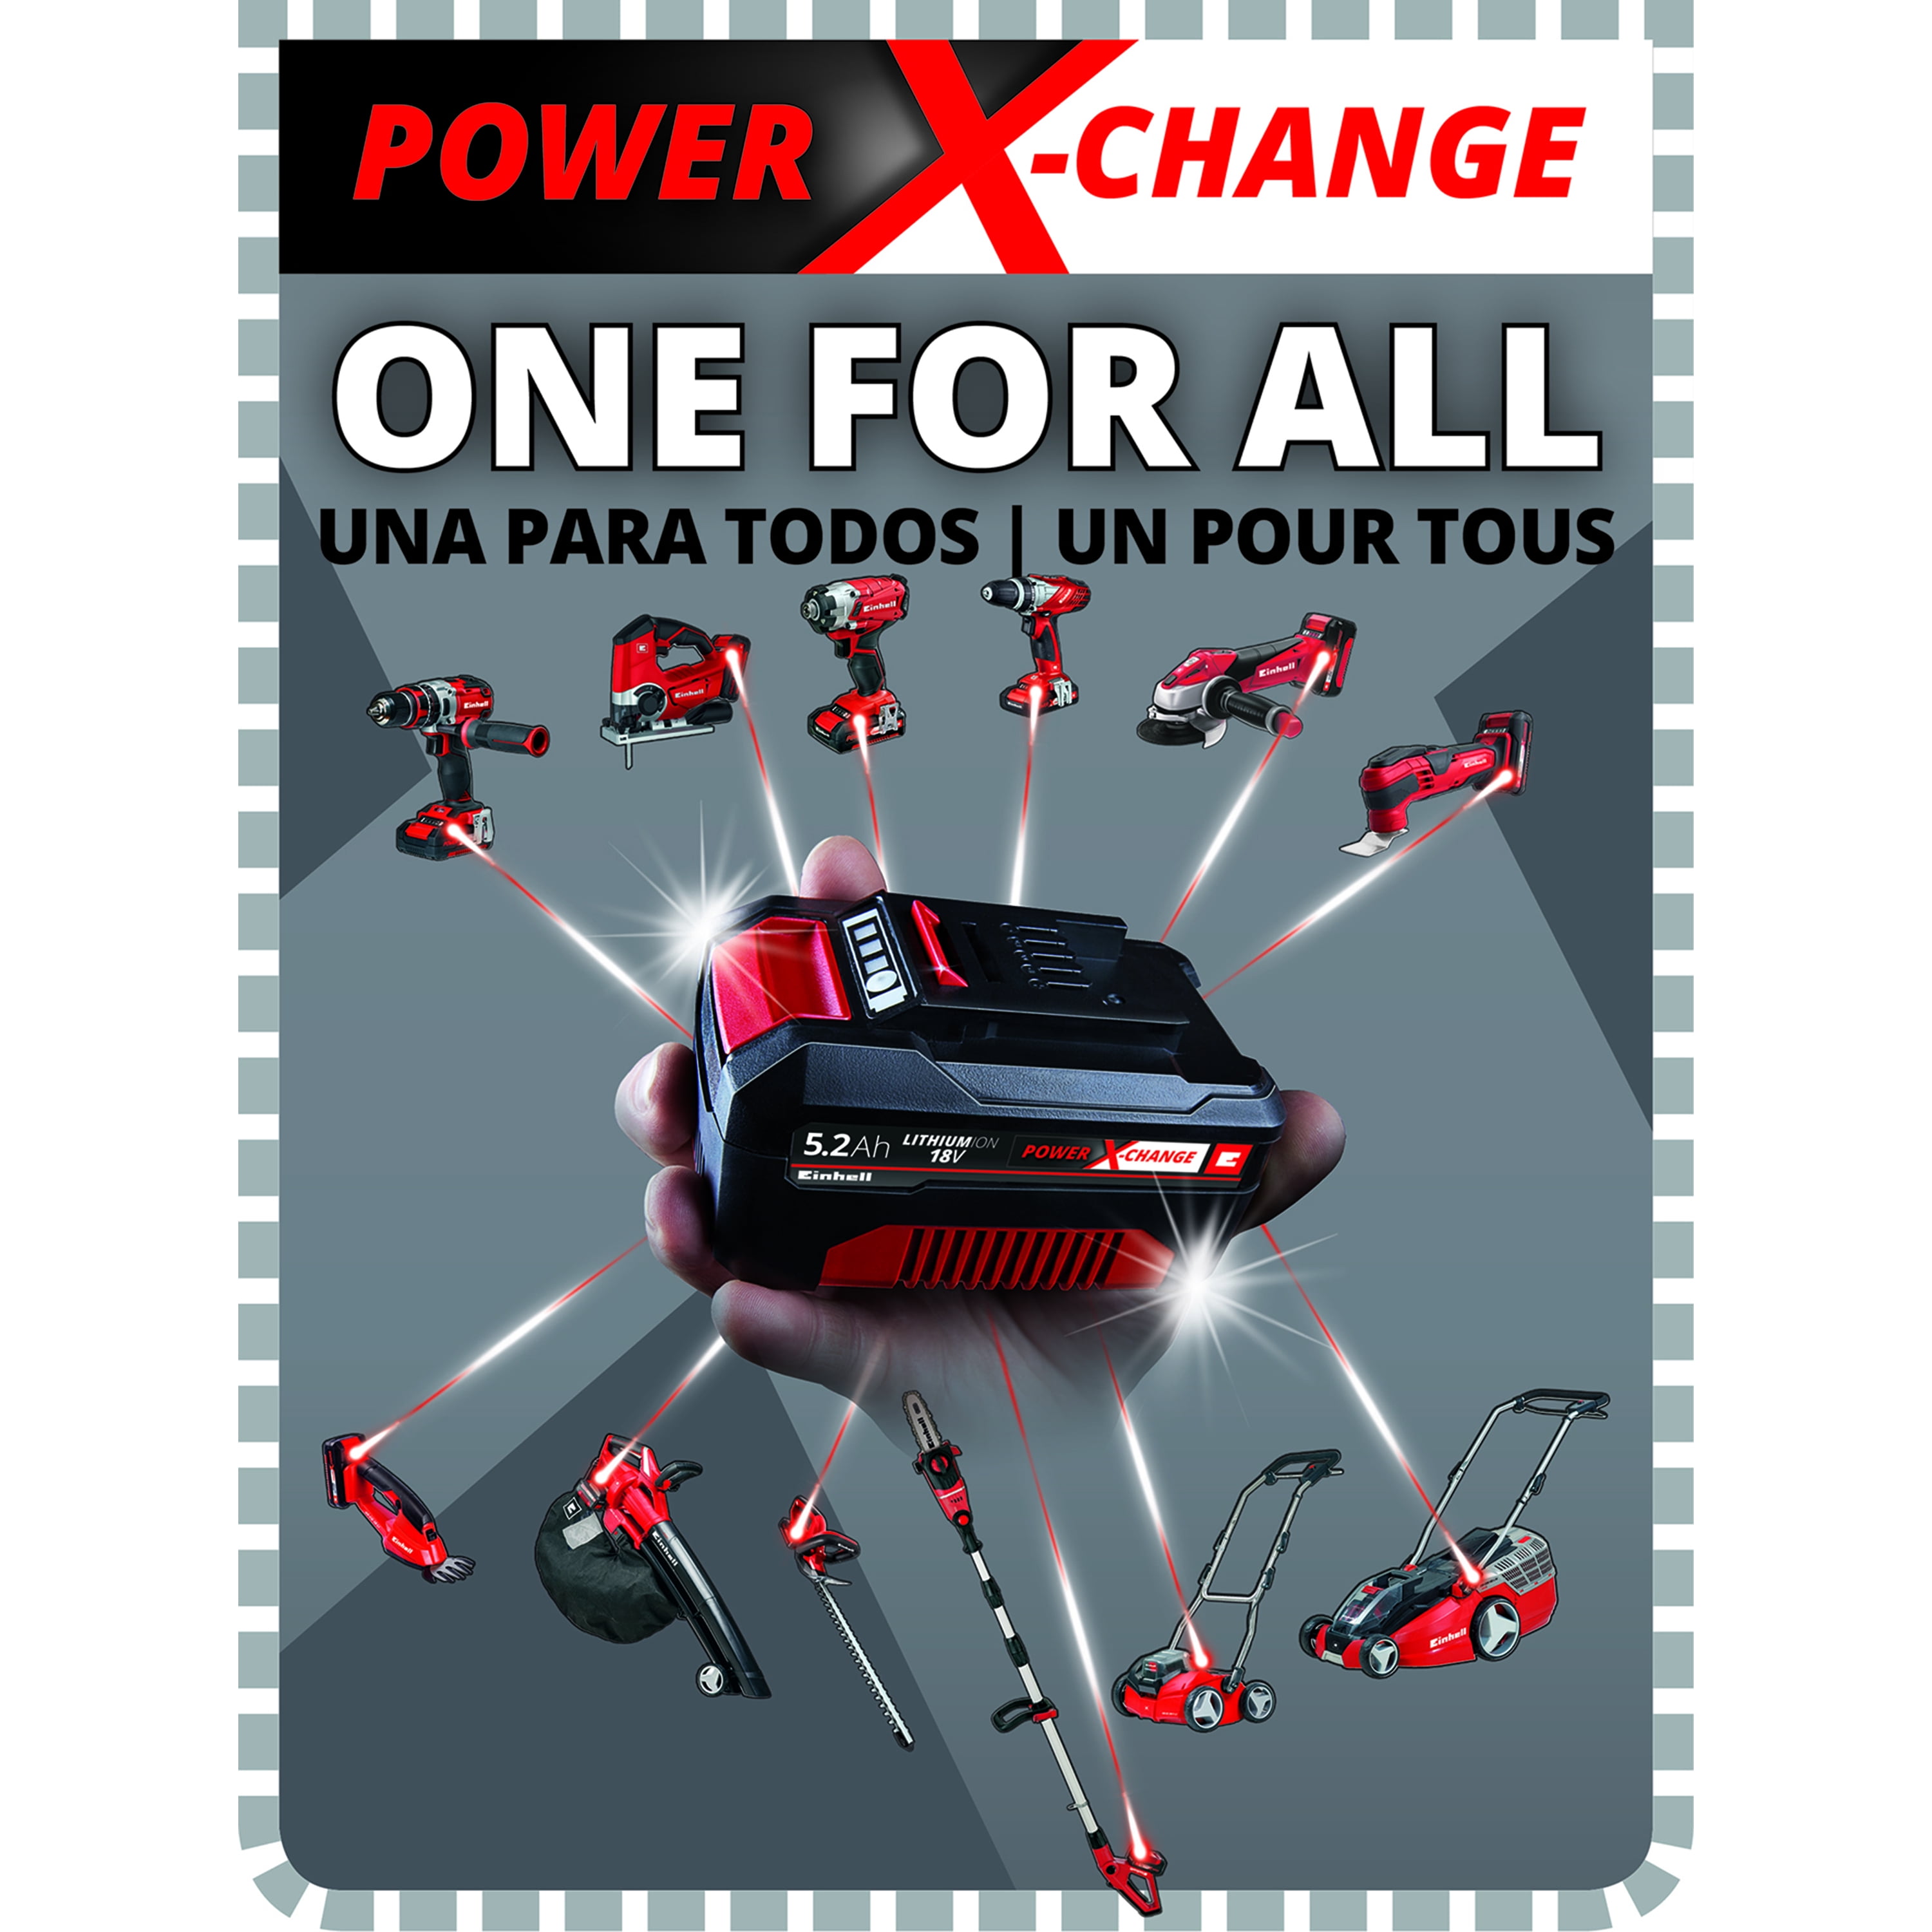 Cargador Power-X 18V + batería 18V 4Ah 1h Einhell